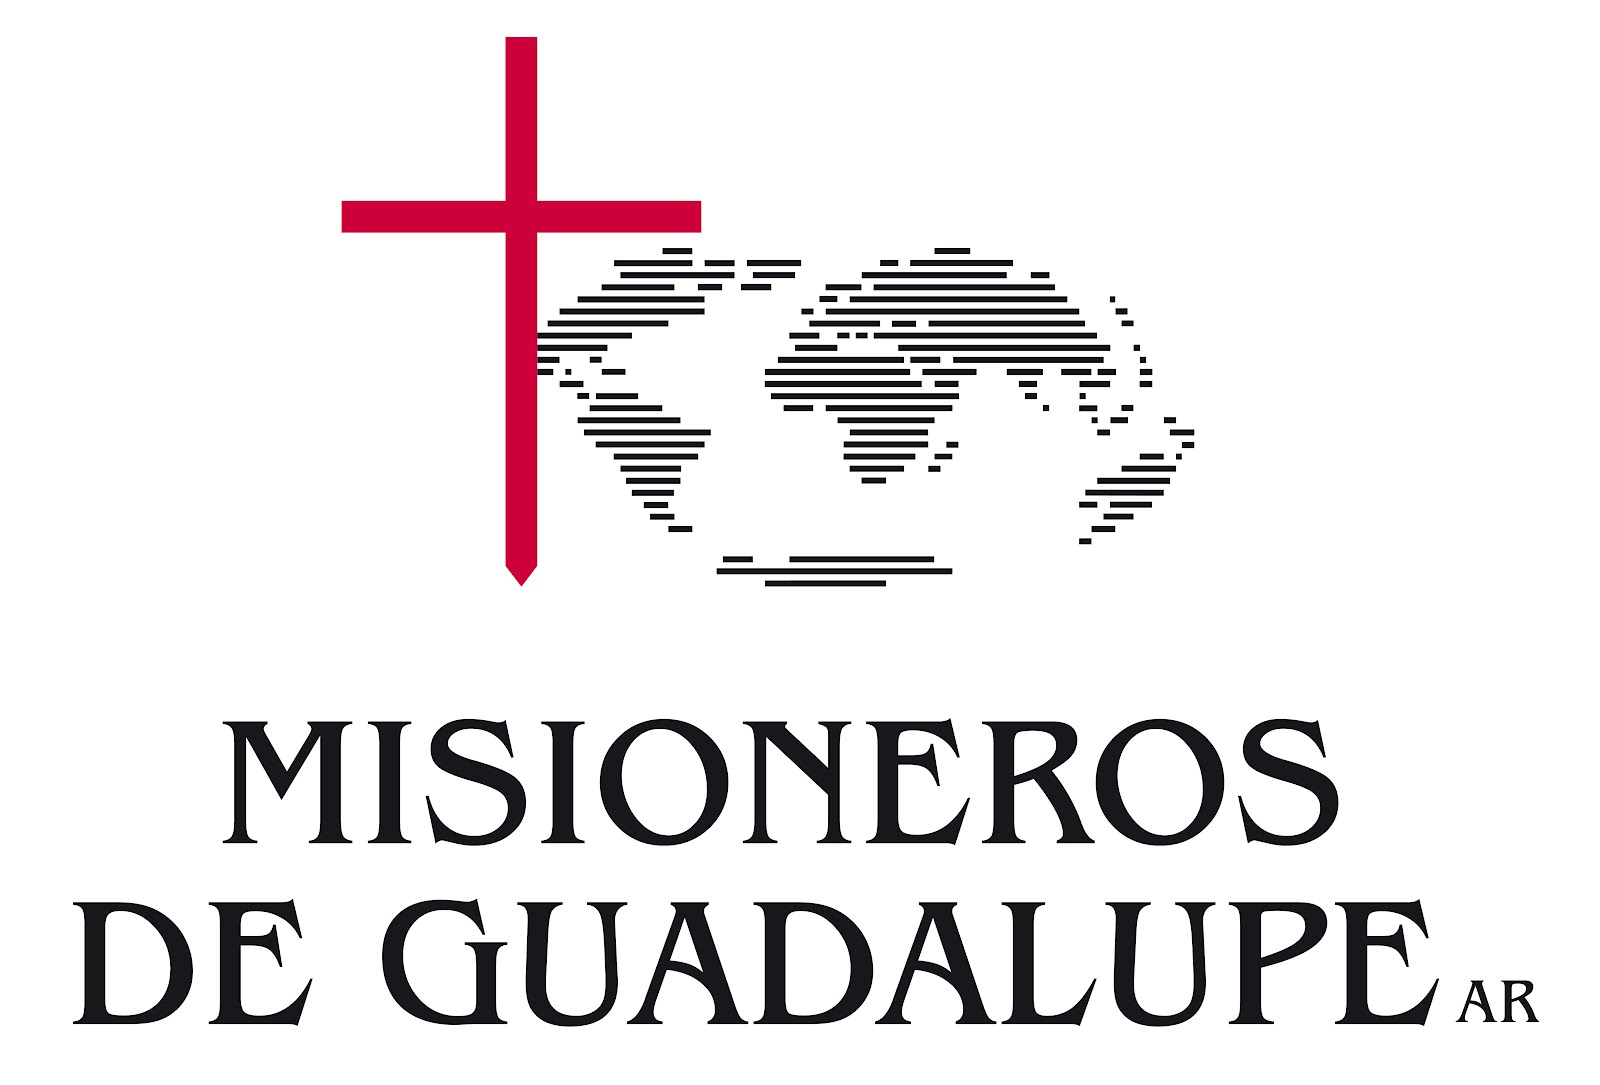 Misioneros de Guadalupe